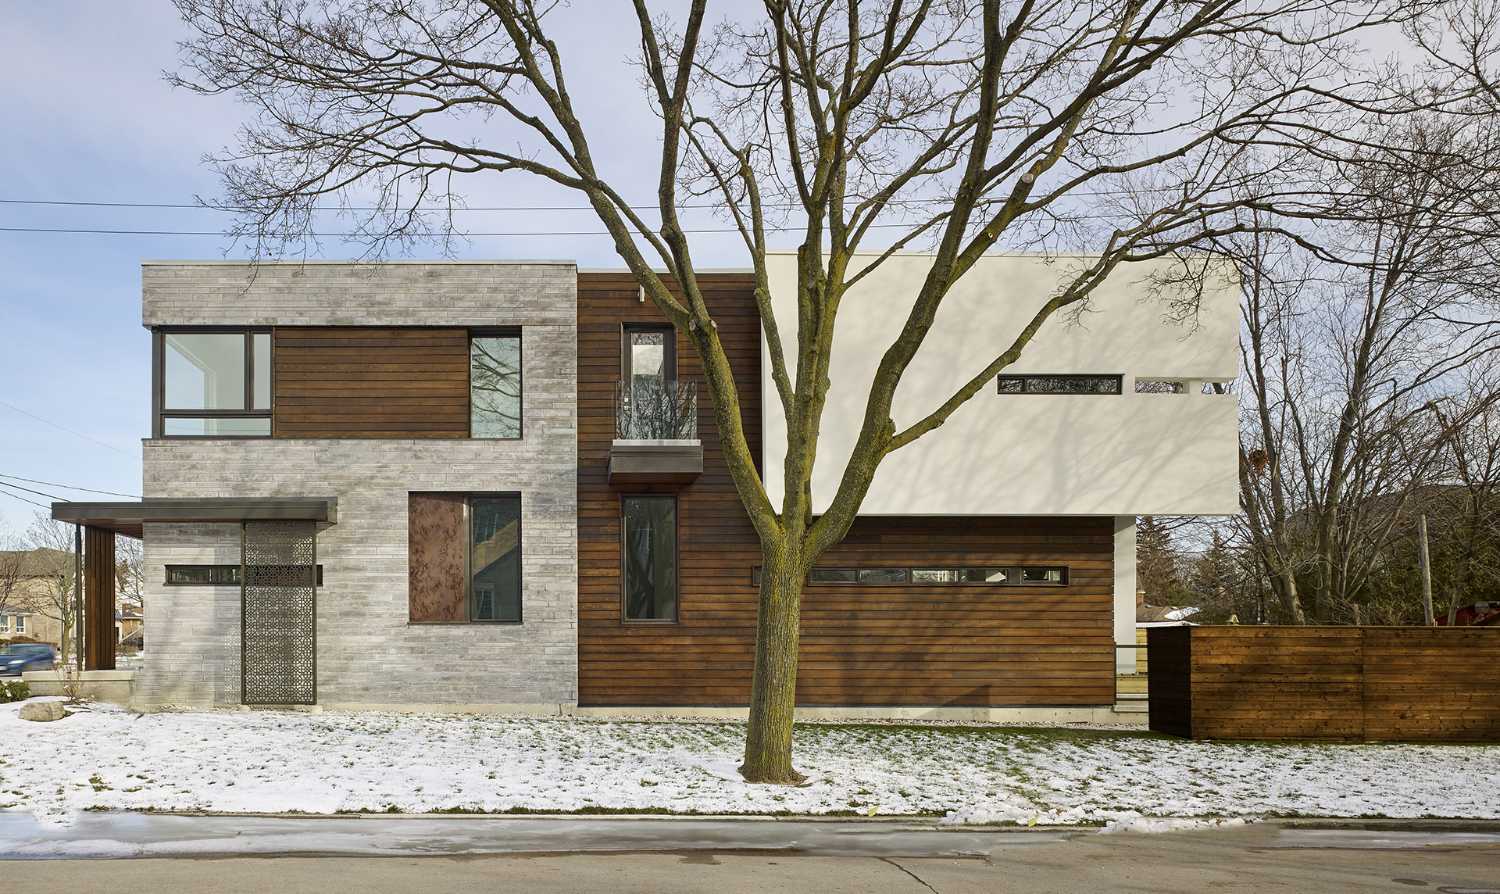 Casa moderna combina diseño y funcionalidad. Líneas sencillas unidas con materiales naturales y refinados